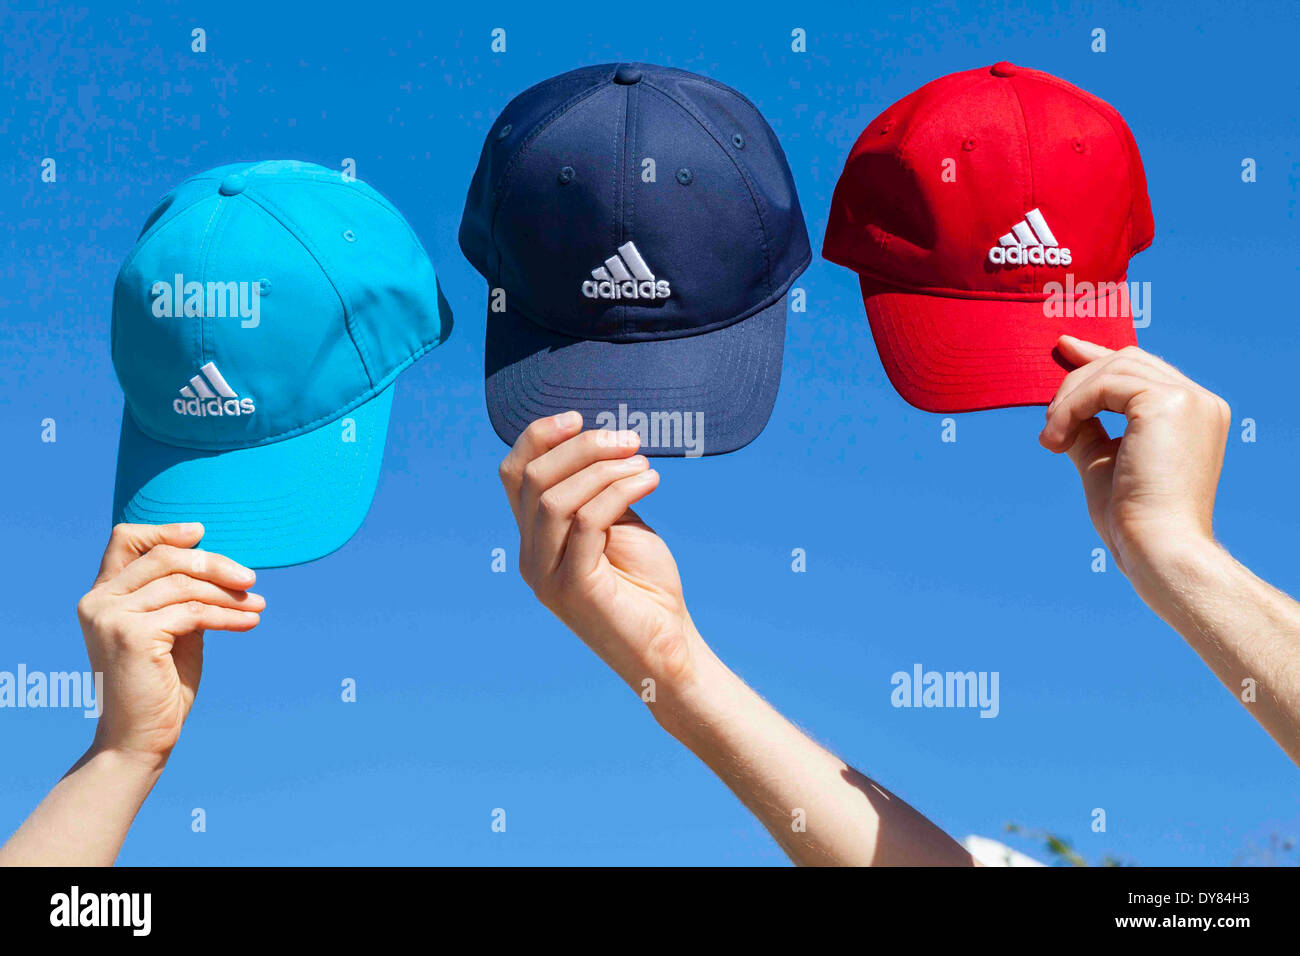 Adidas hat immagini e fotografie stock ad alta risoluzione - Alamy